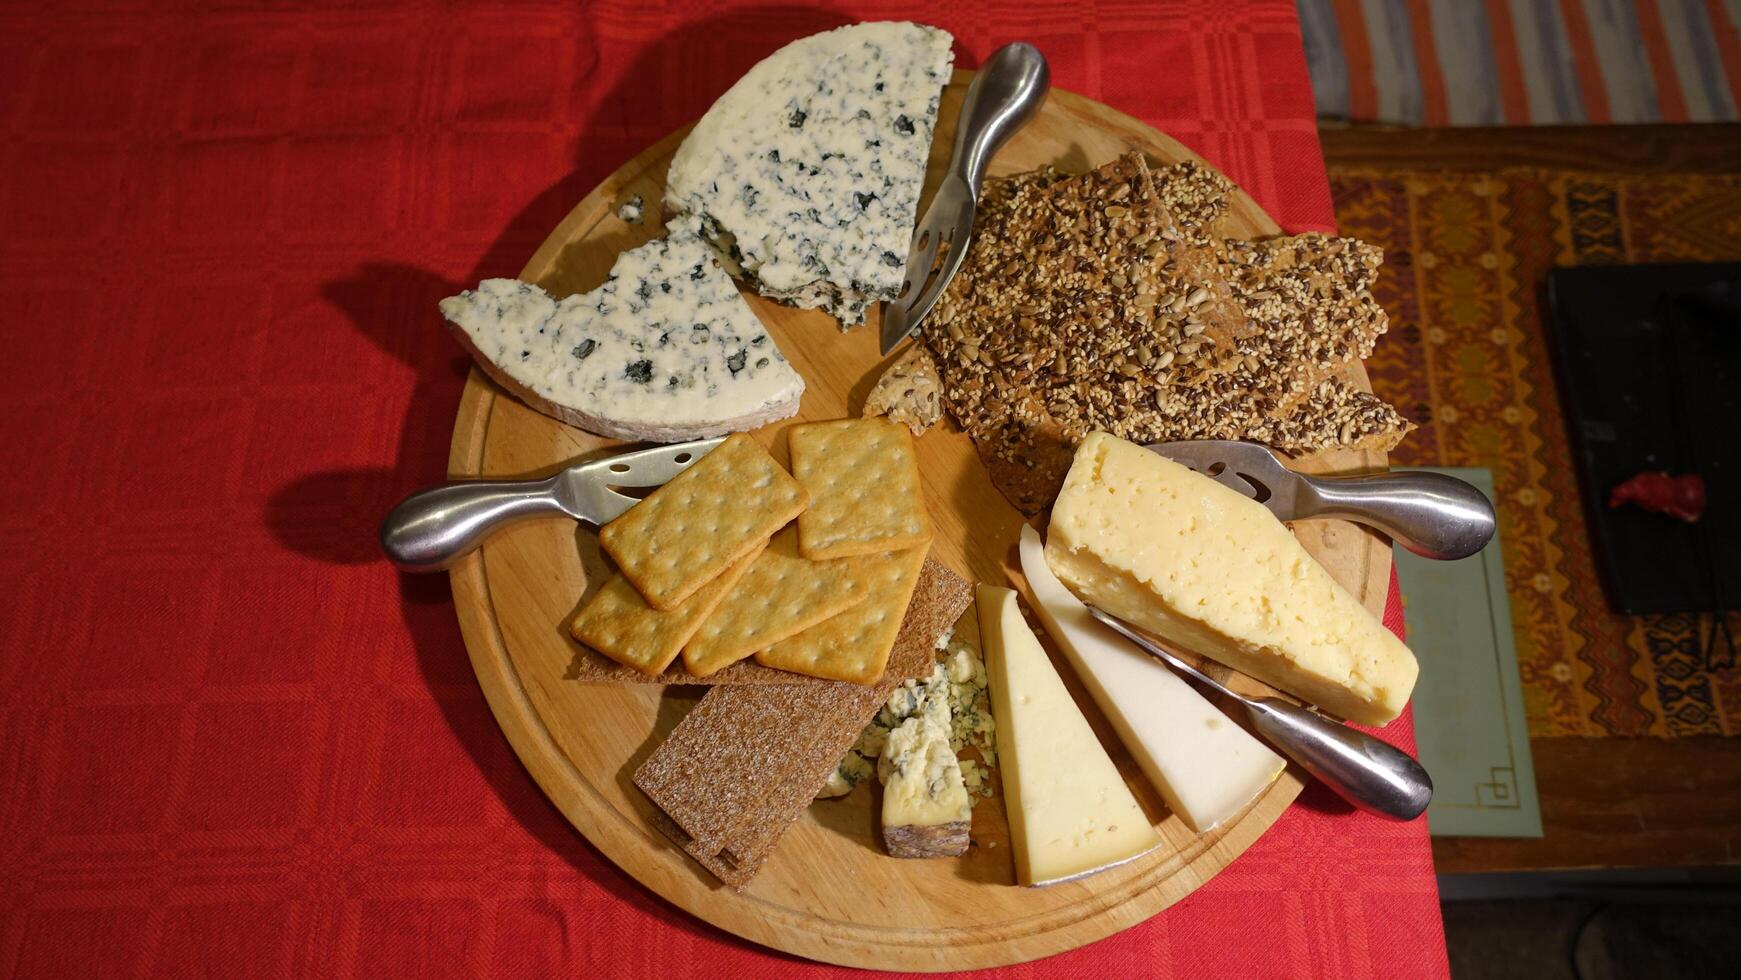 mixte vache les fromages servi sur une en bois assiette avec tranches de complet pain photo